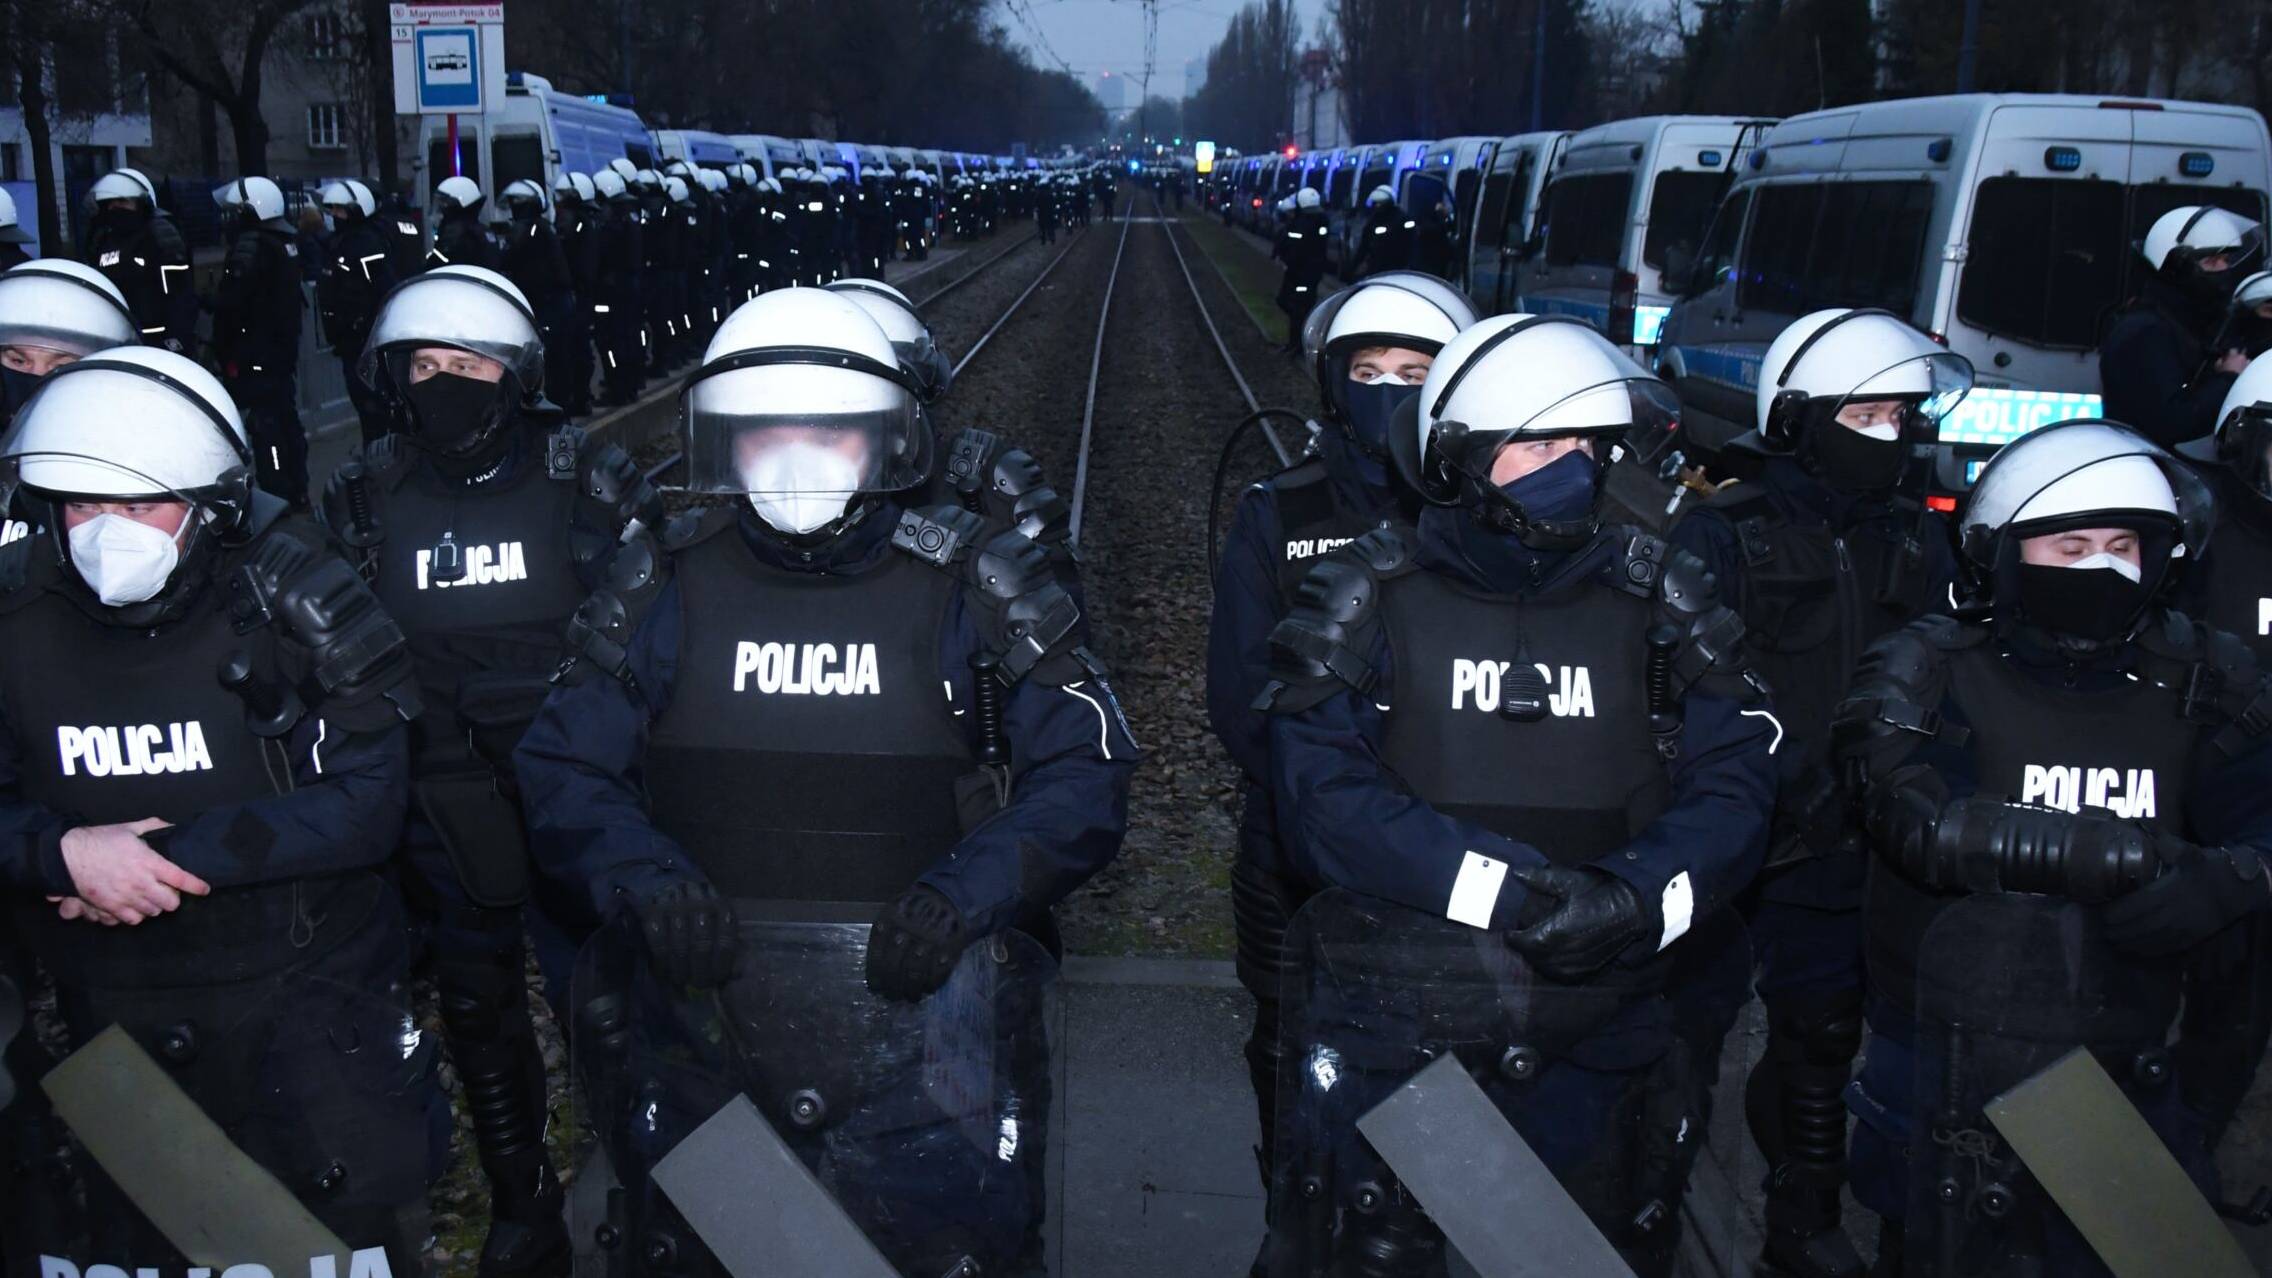 13.12.2020; policja pod domem Jarosława Kaczynskiego, Strajk Kobiet